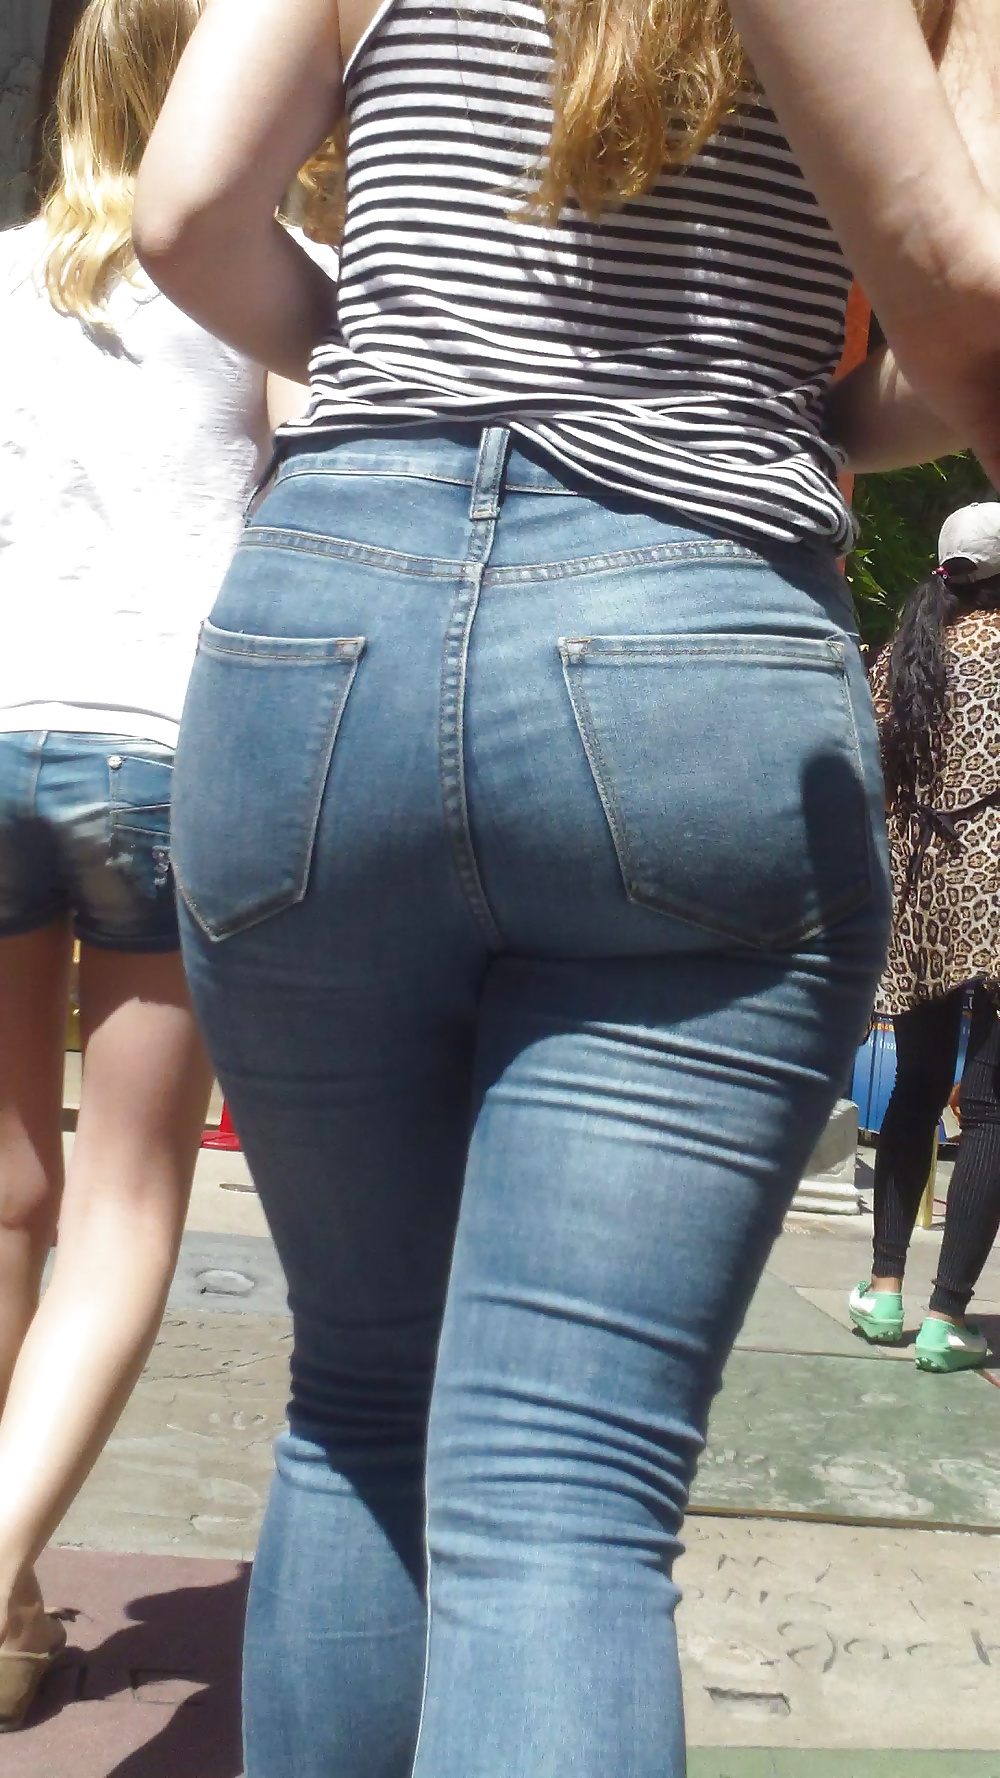 Popular teen girls ass & butt in jeans Part 5 #28734104